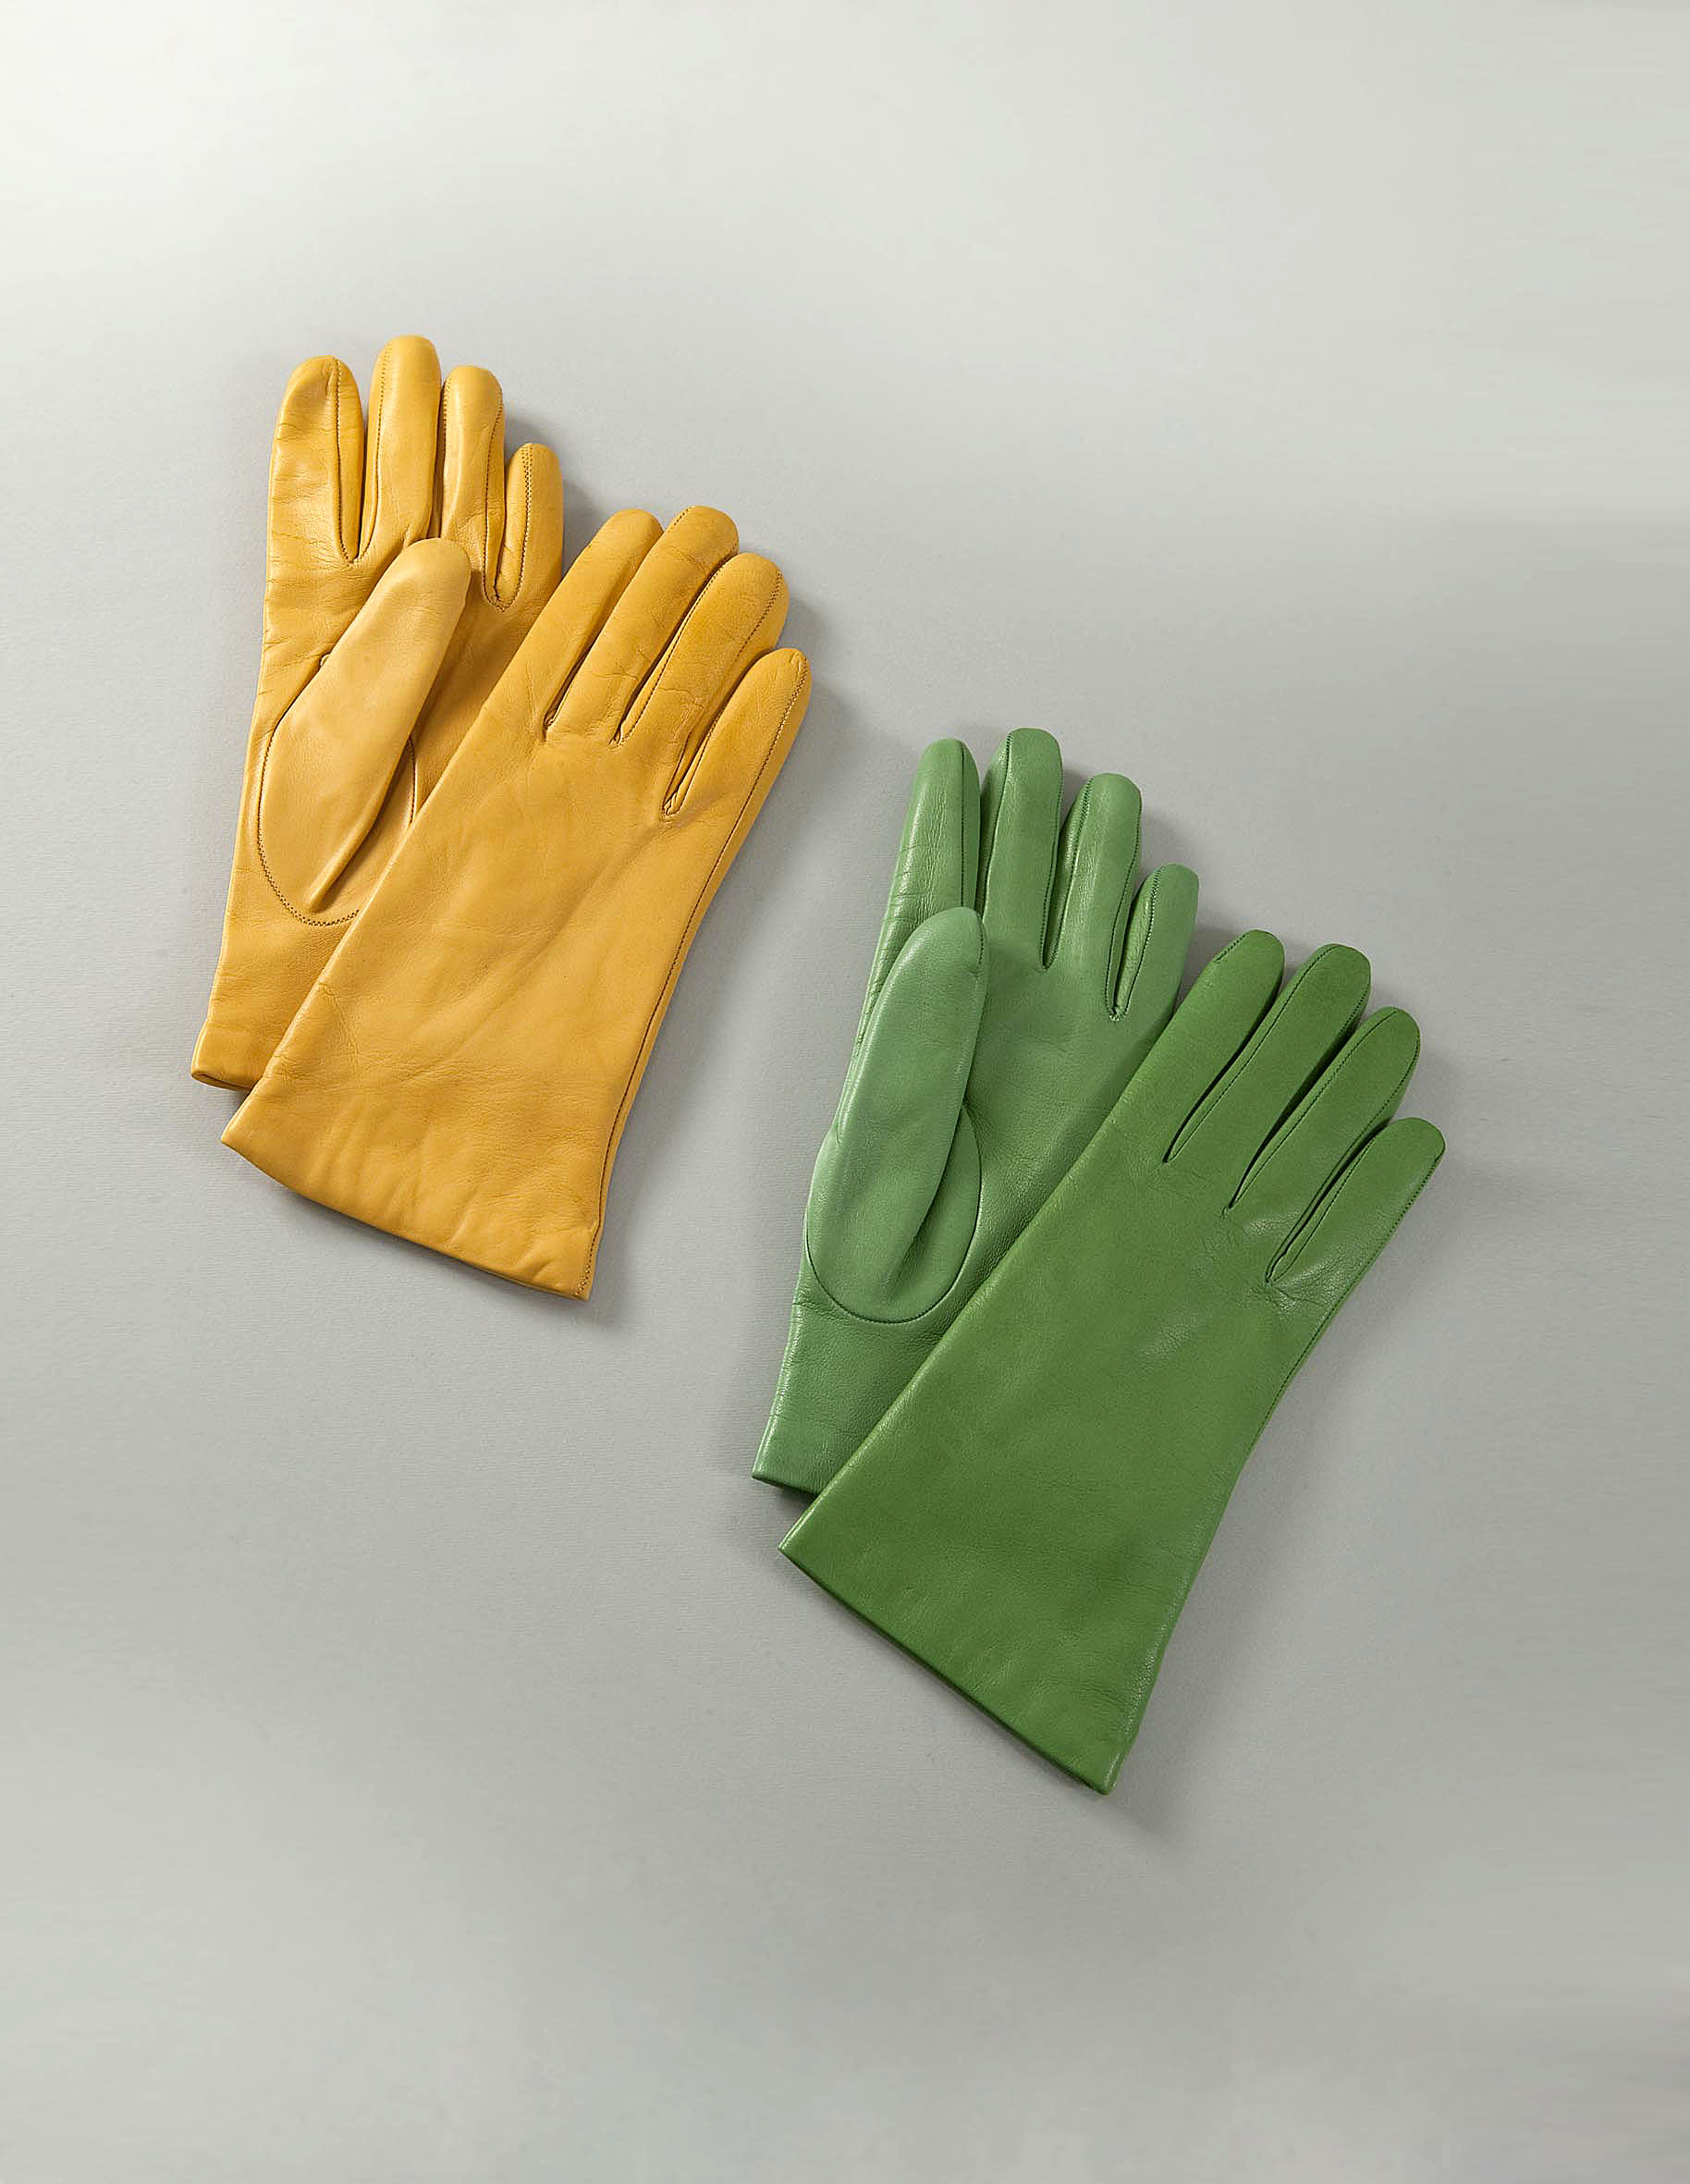 Sermoneta Gloves, senape e verde i nuovi colori dell'inverno